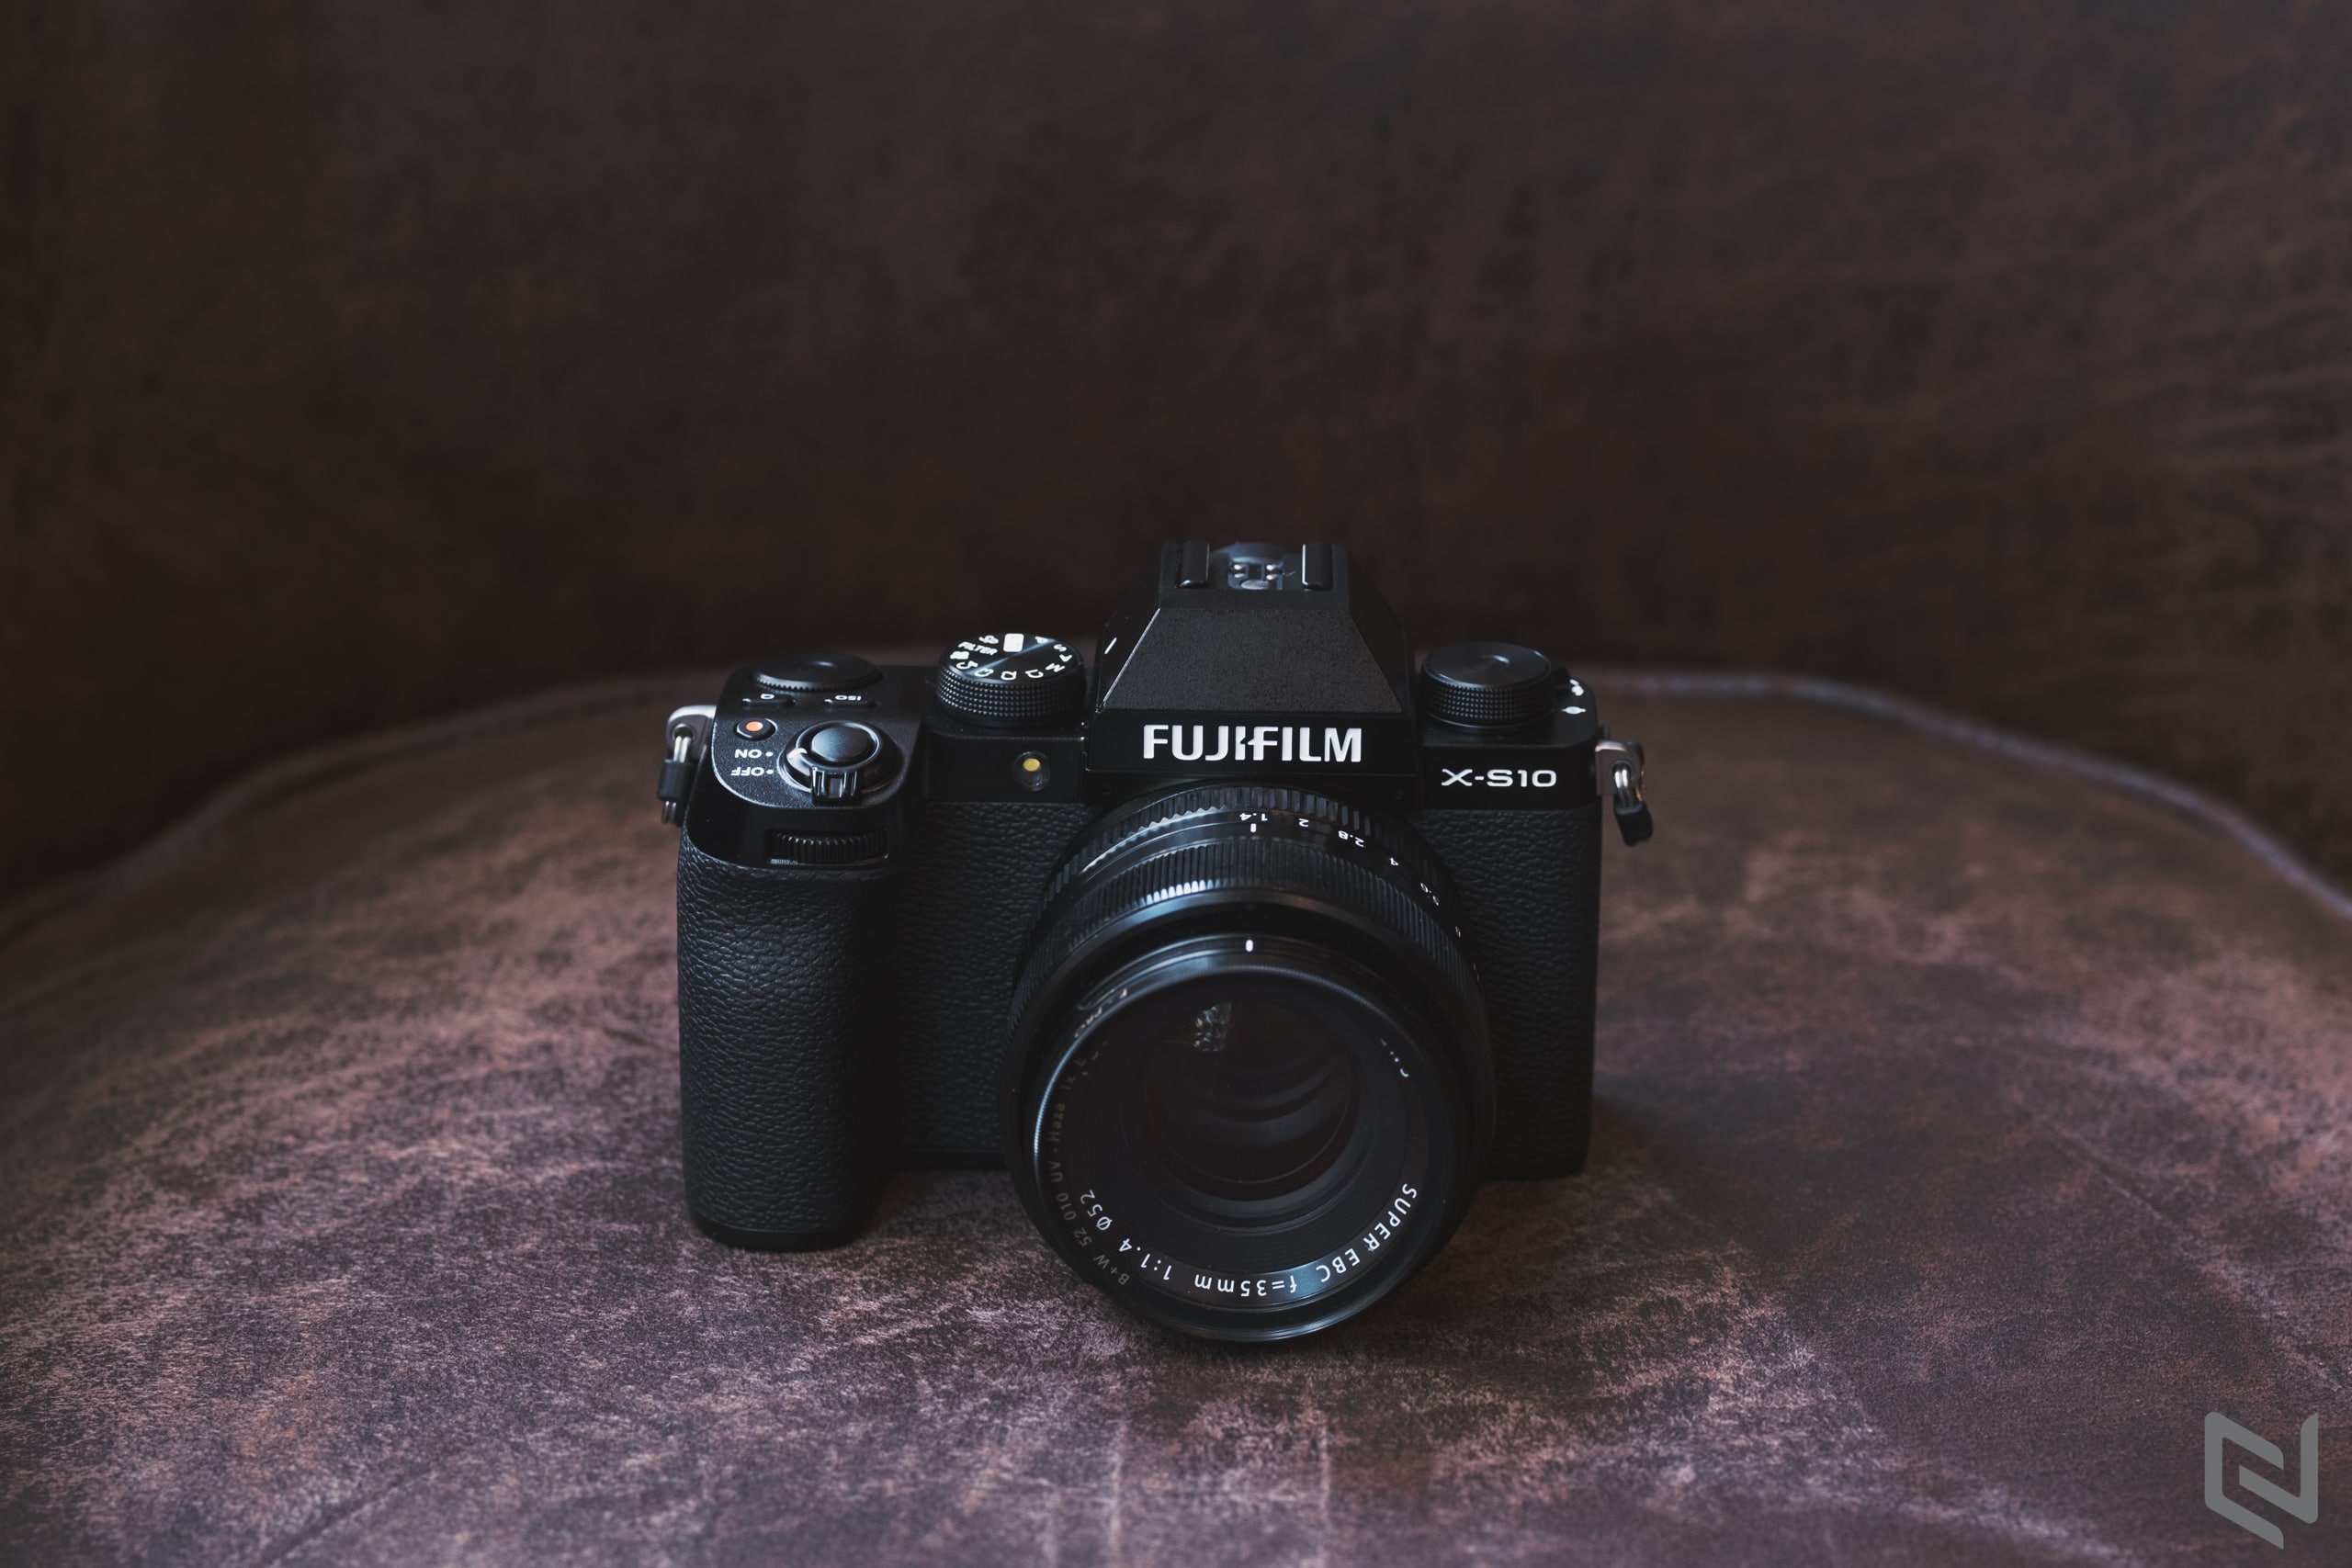 Trên tay Fujifilm X-S10: Chống rung thân máy rất tốt, nhỏ mà có võ